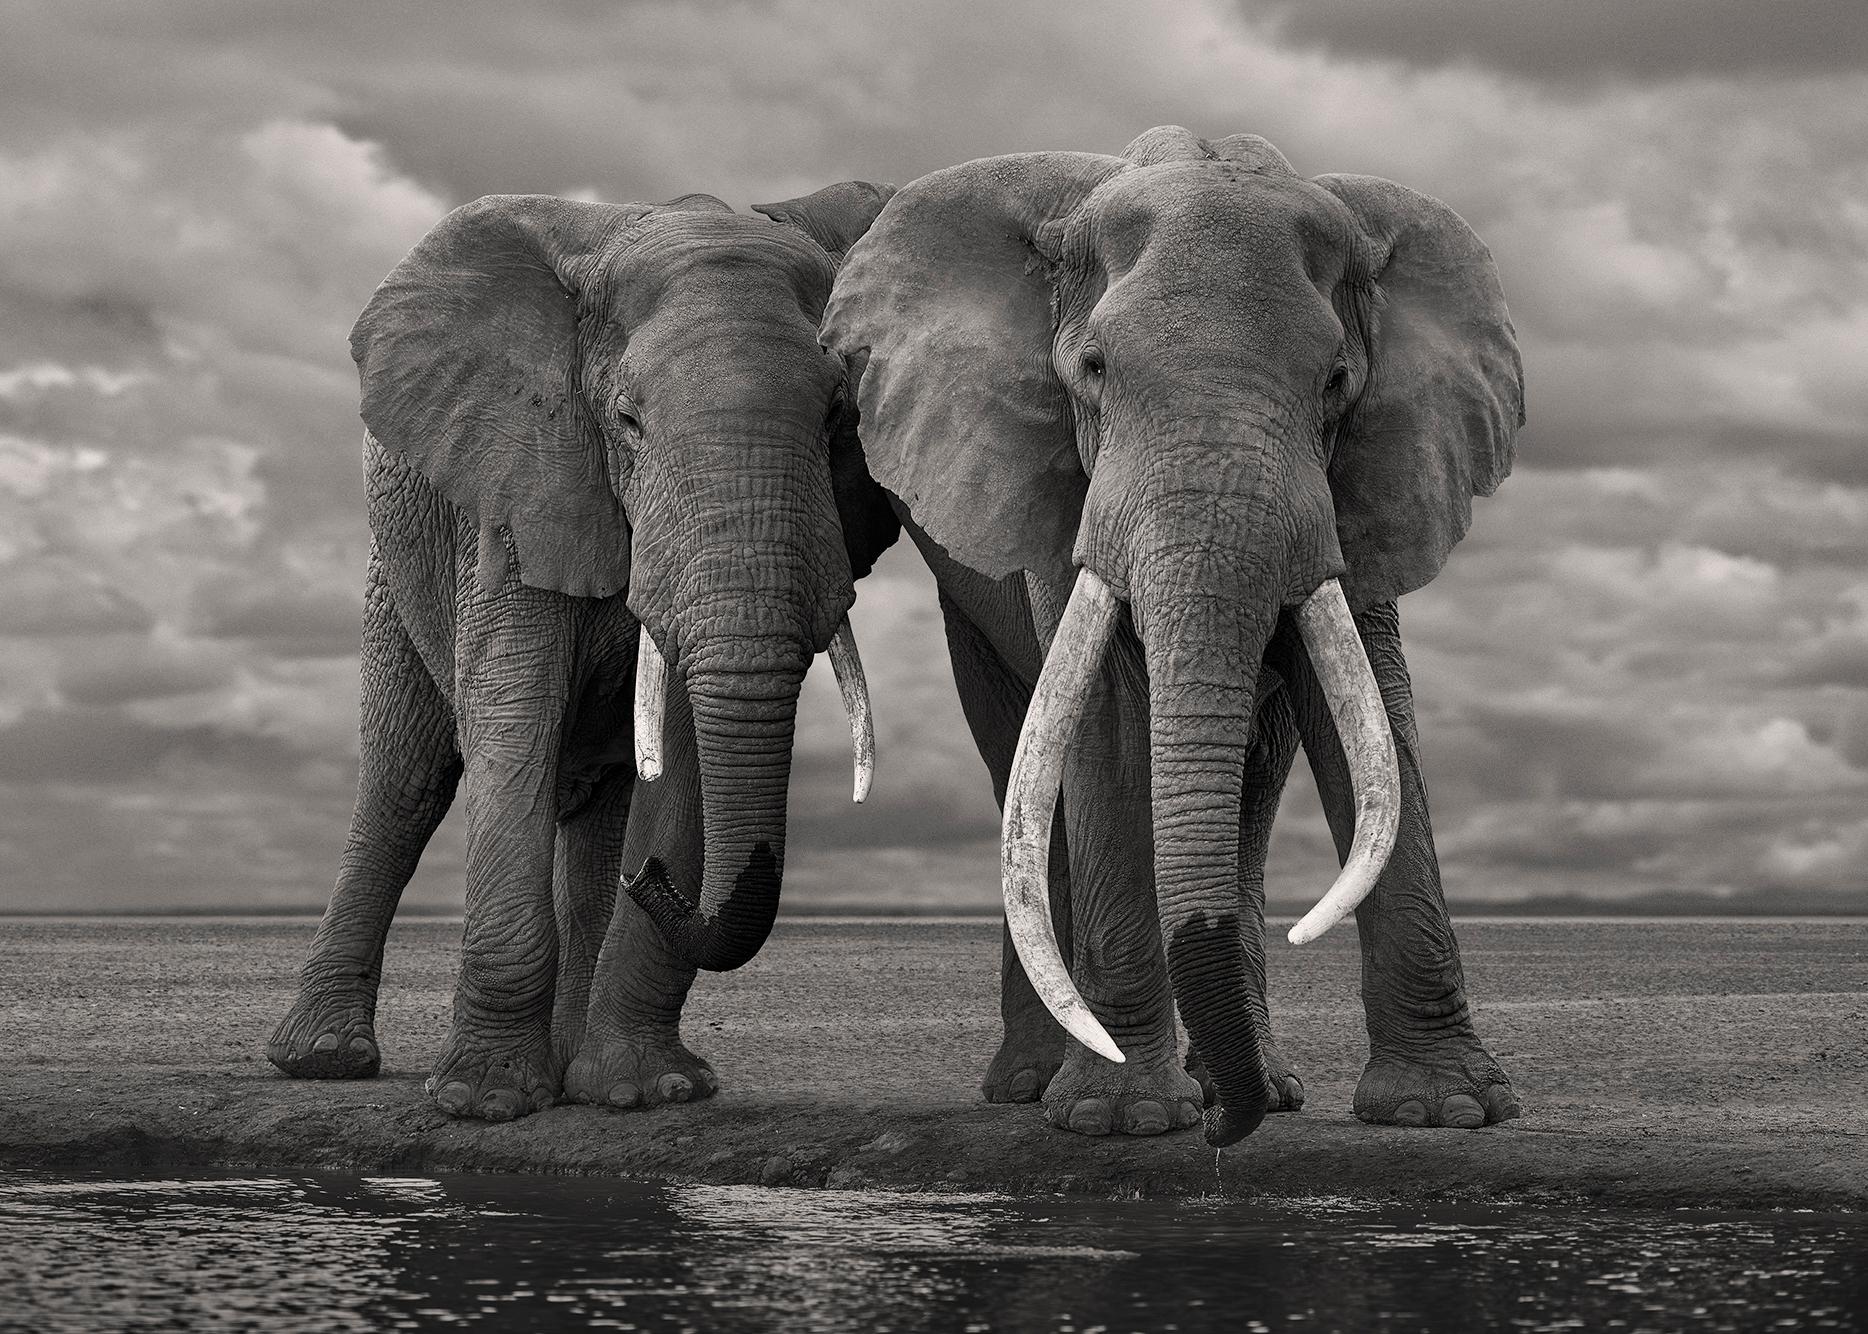 Young Mother Elephant, Amboseli, Kenya (12” x 20”)